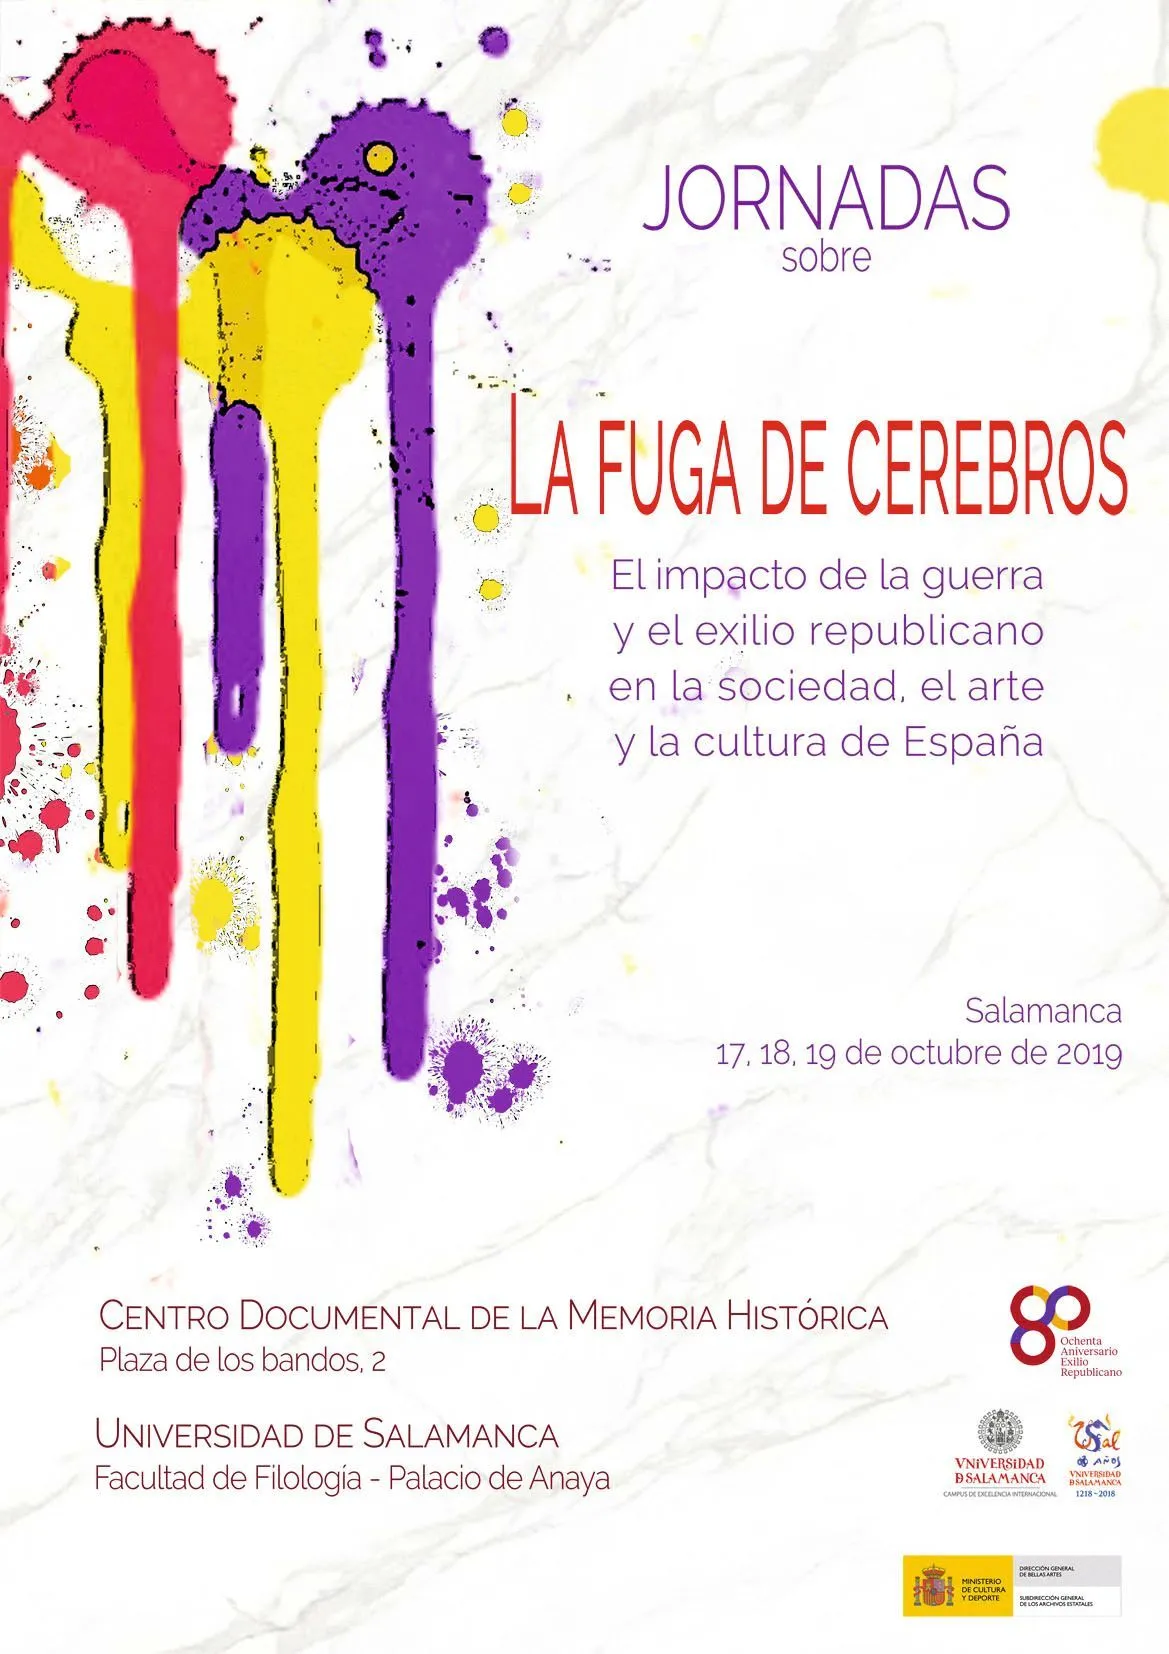 Cartel de las jornadas La fuga de cerebros, Centro Documental de la Memoria Histórica, 2019.